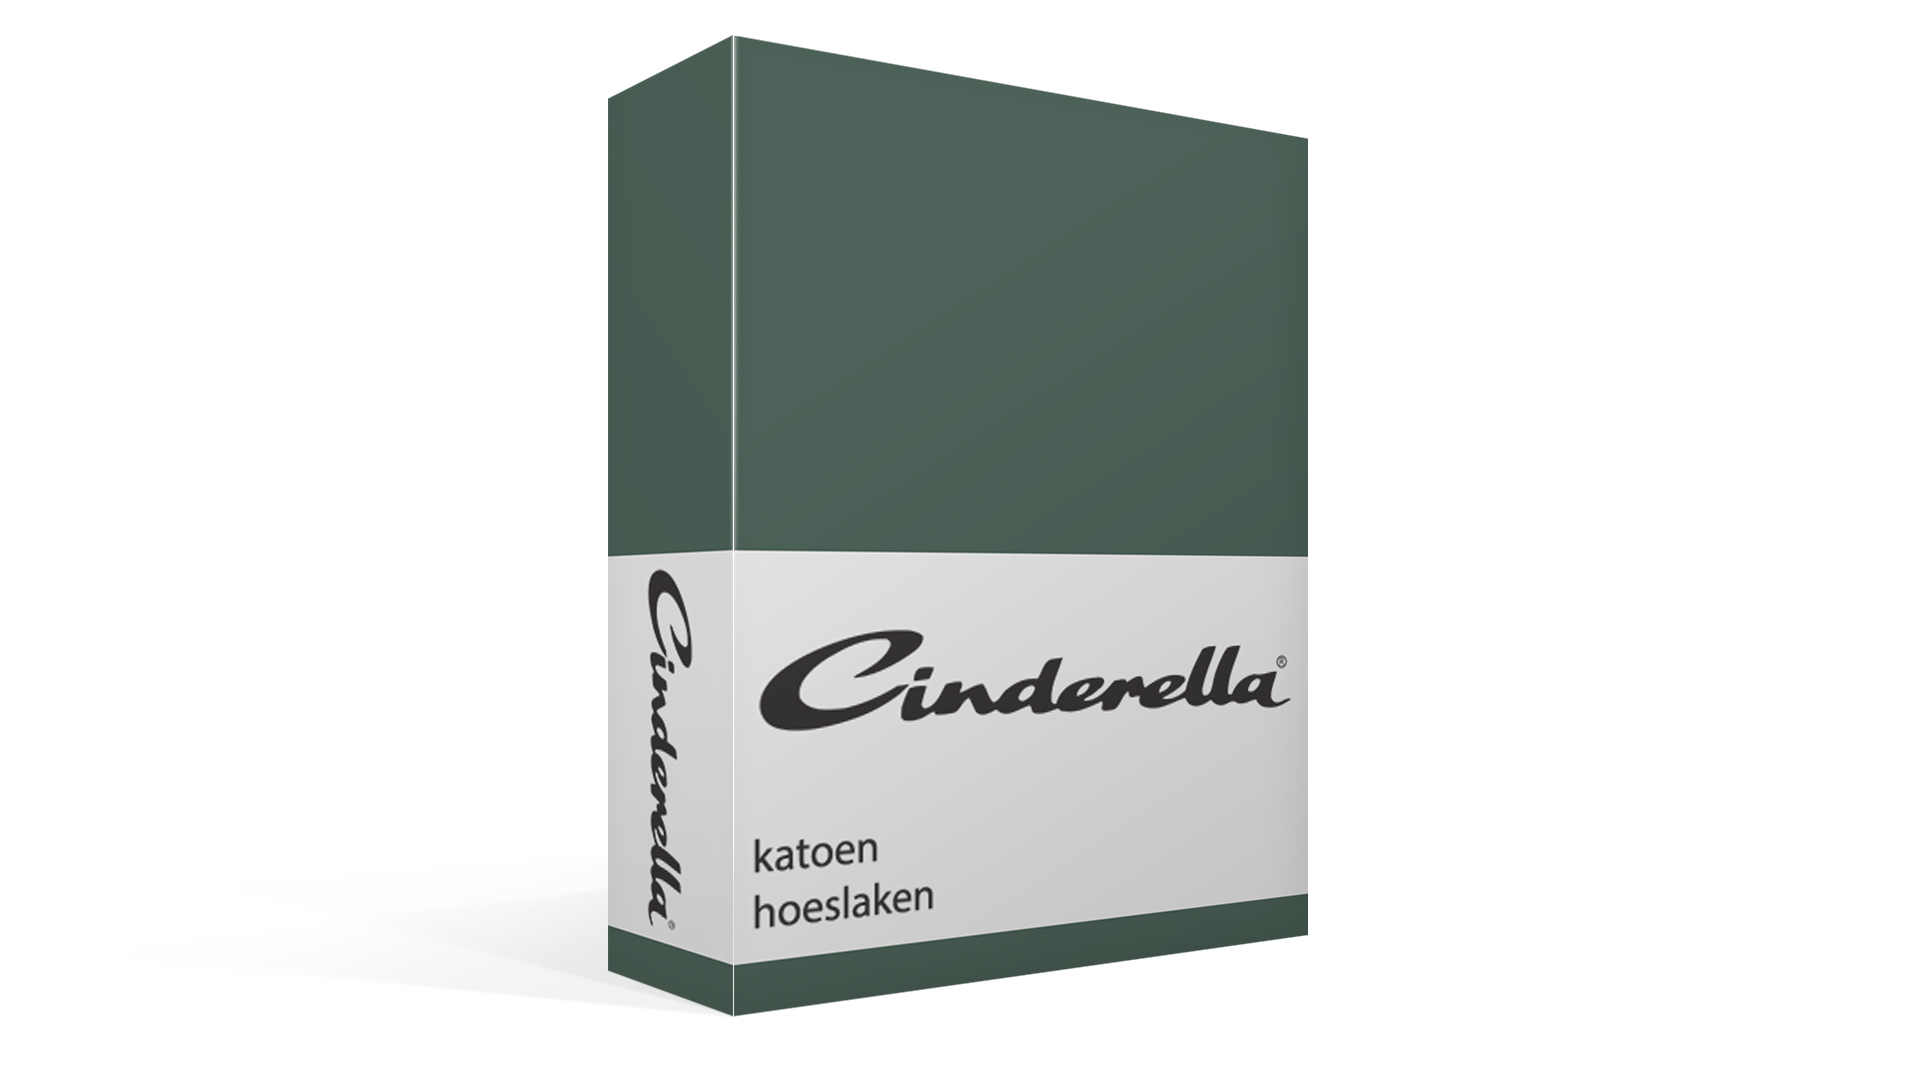 Cinderella katoen hoeslaken - green